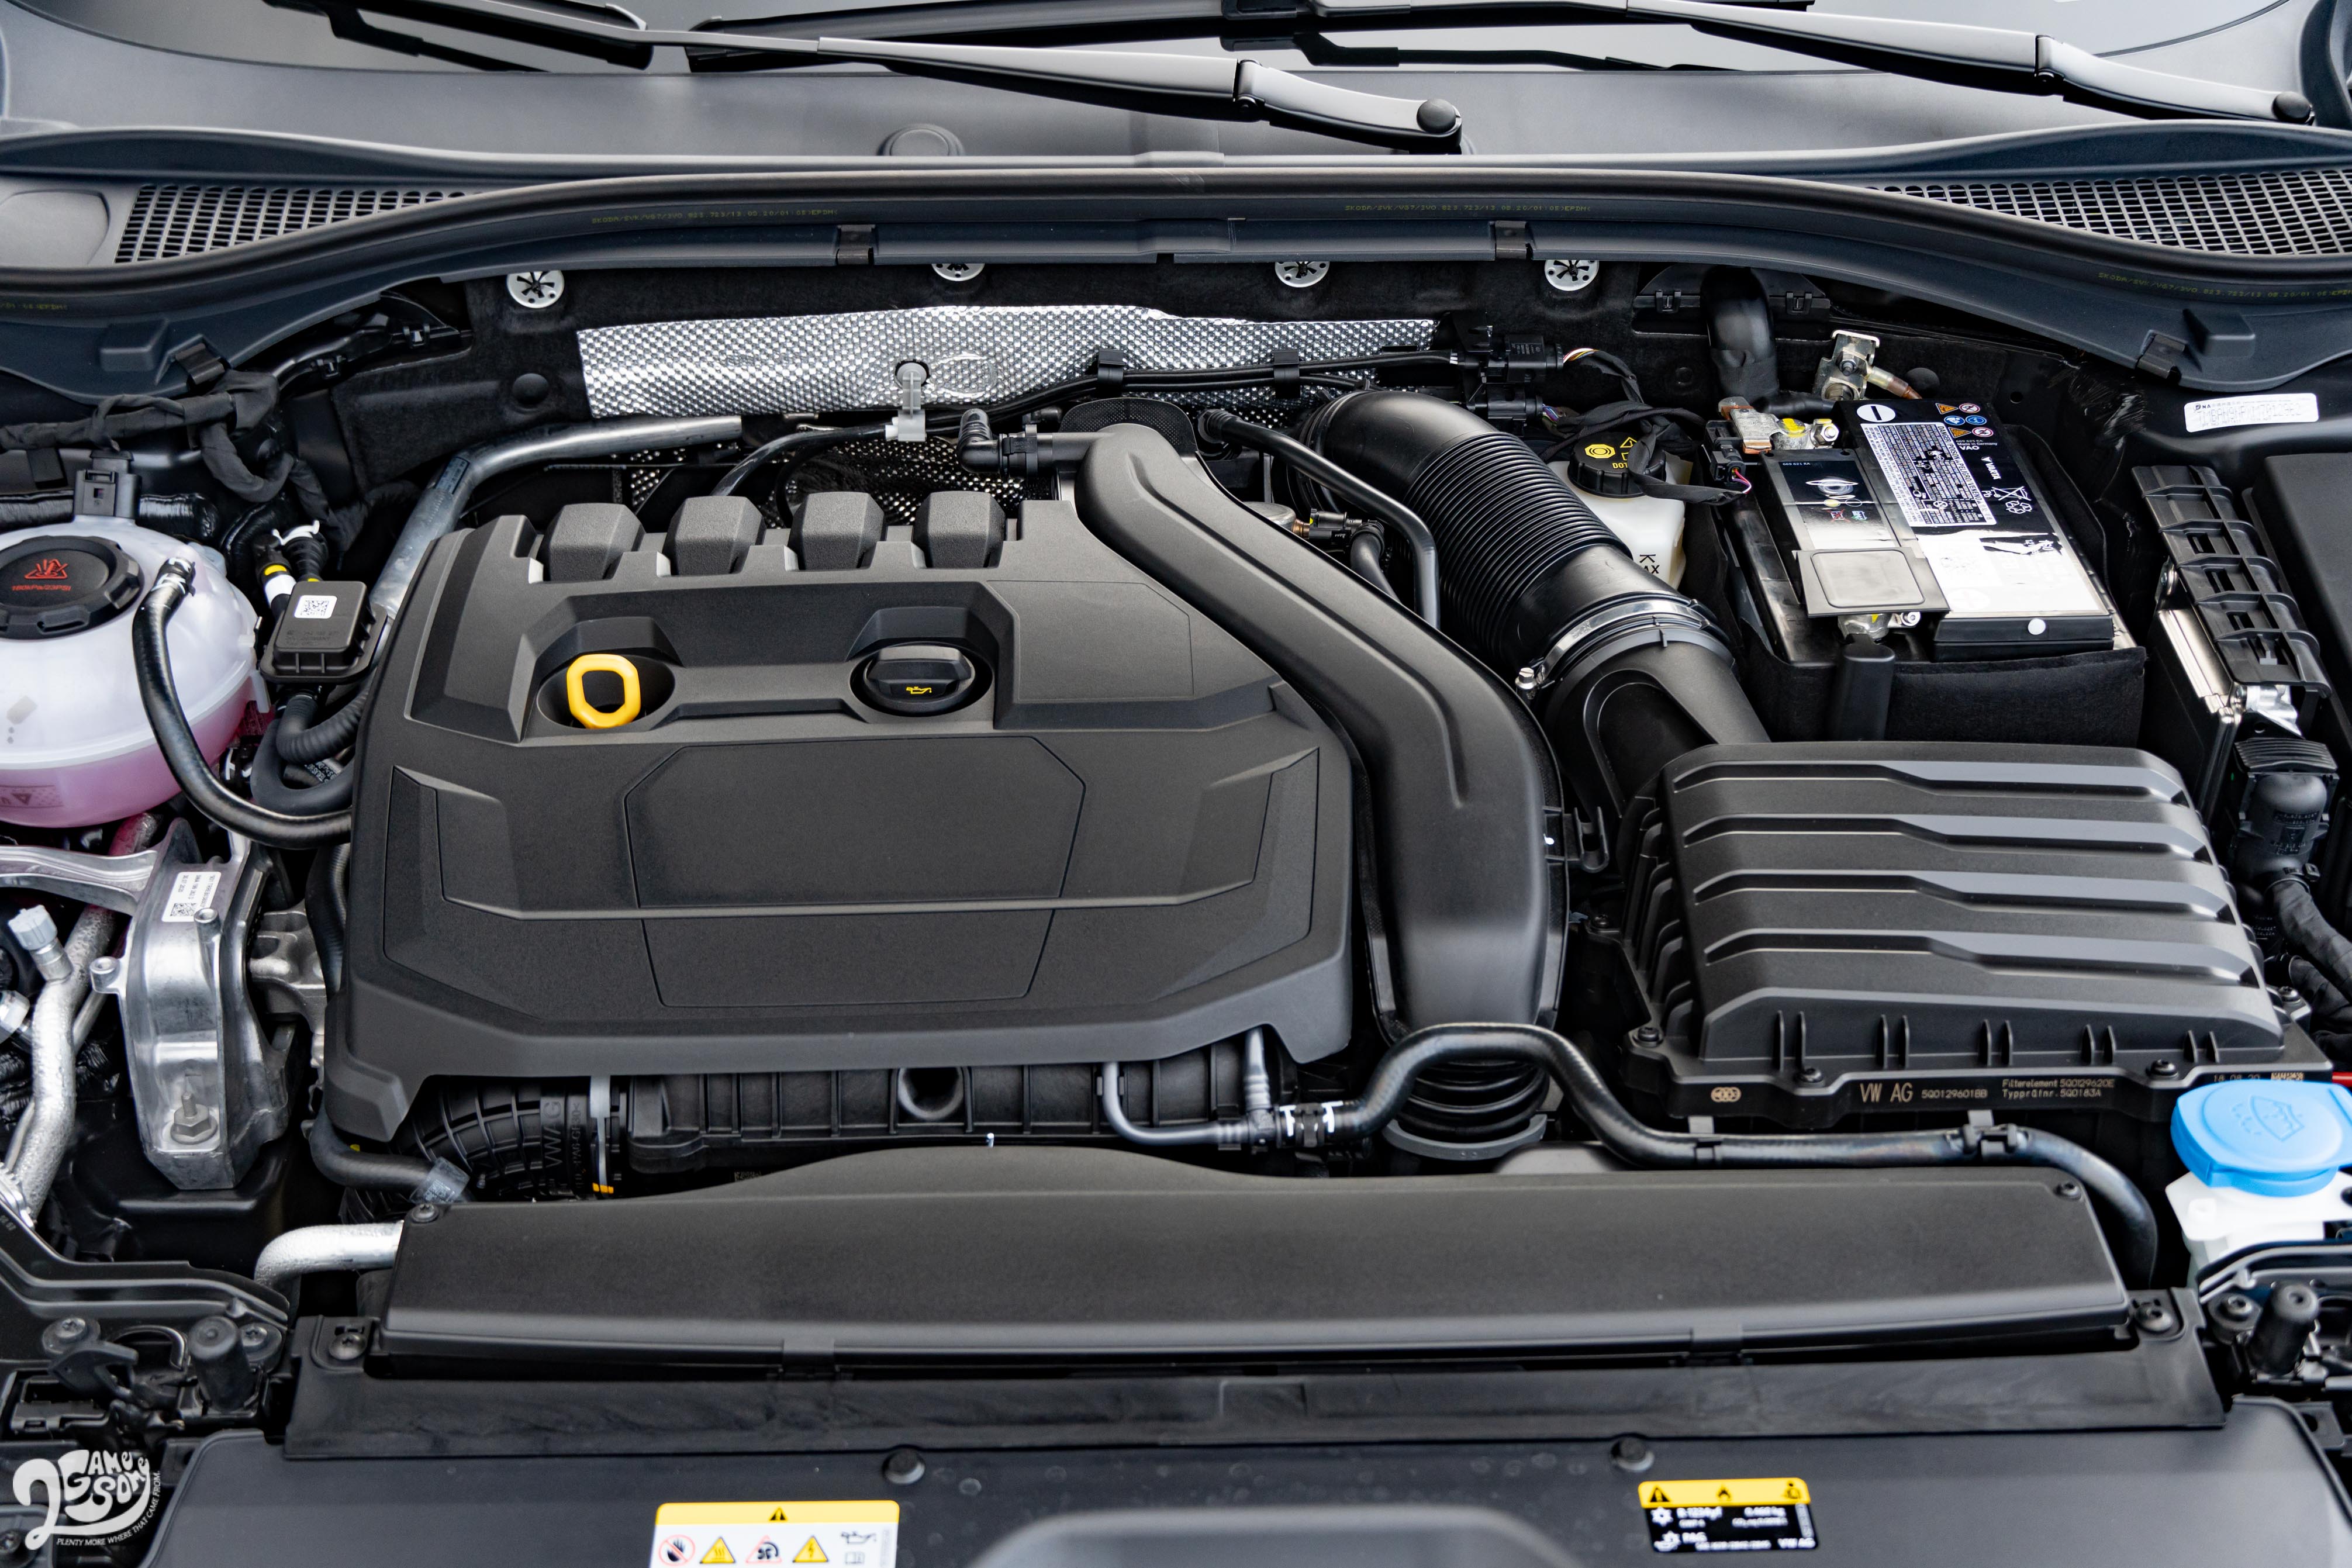 1.5 升渦輪四缸引擎配備 ACT 汽缸引擎歇止系統，搭配七速雙離合器自手排。